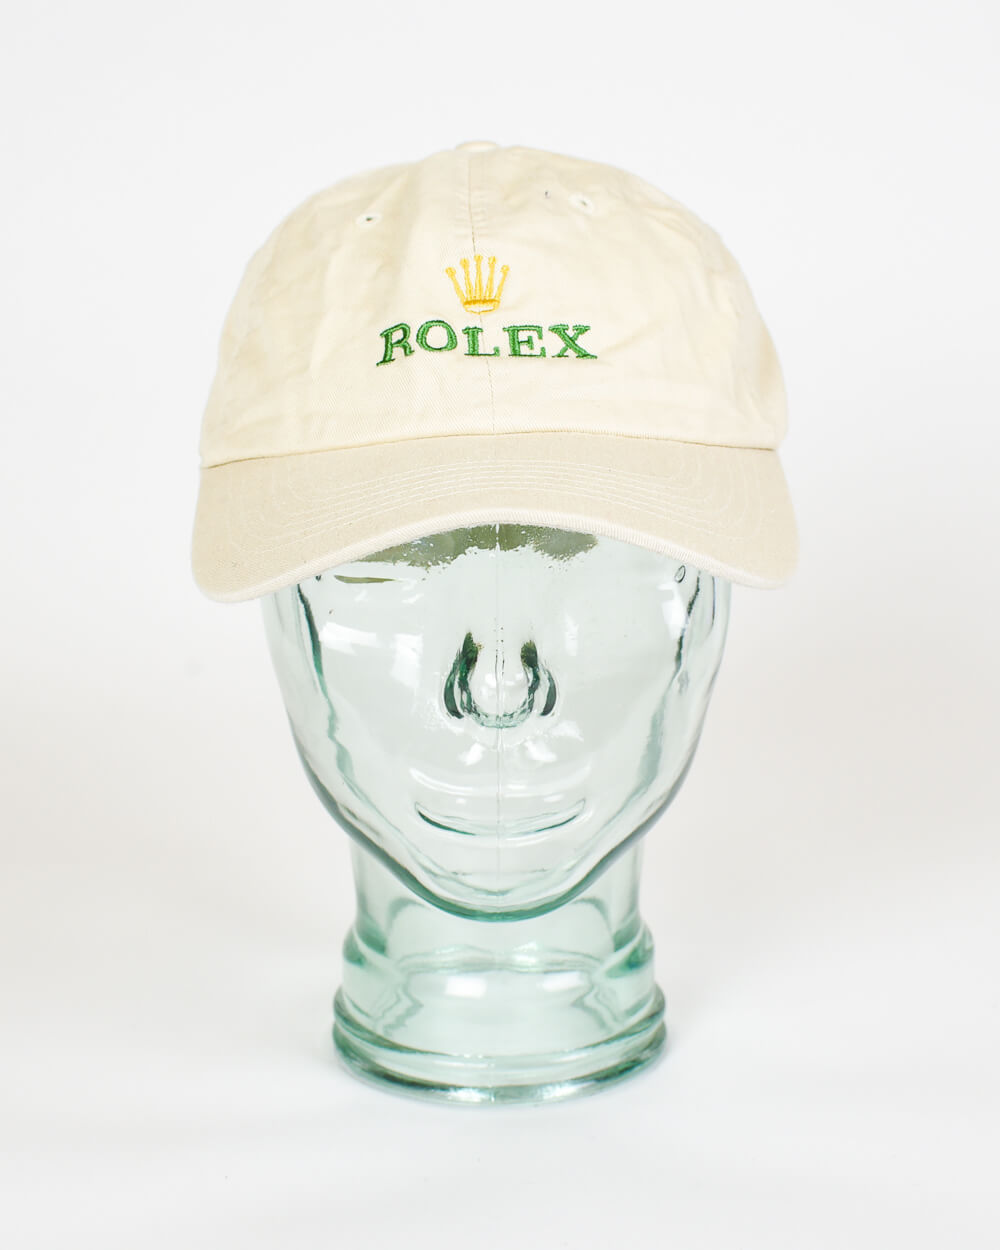 Vintage 00s Cotton Neutral Rolex Cap